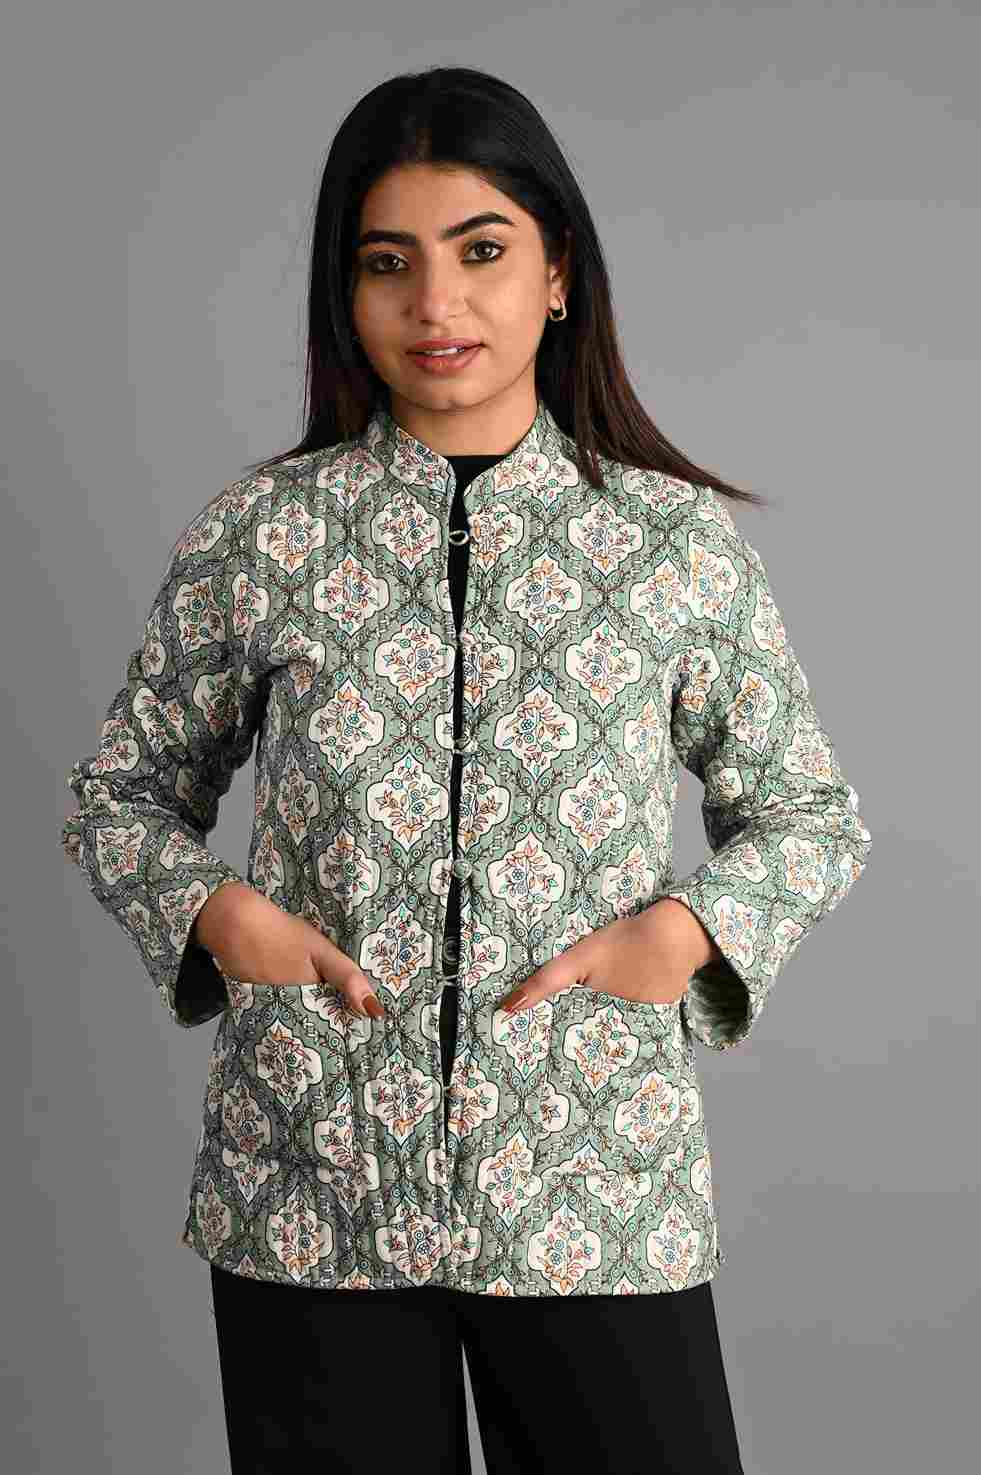 Full Sleeve Blue Ladies Jaipuri Jacket, Size: Medium at Rs 1000 in Jaipur